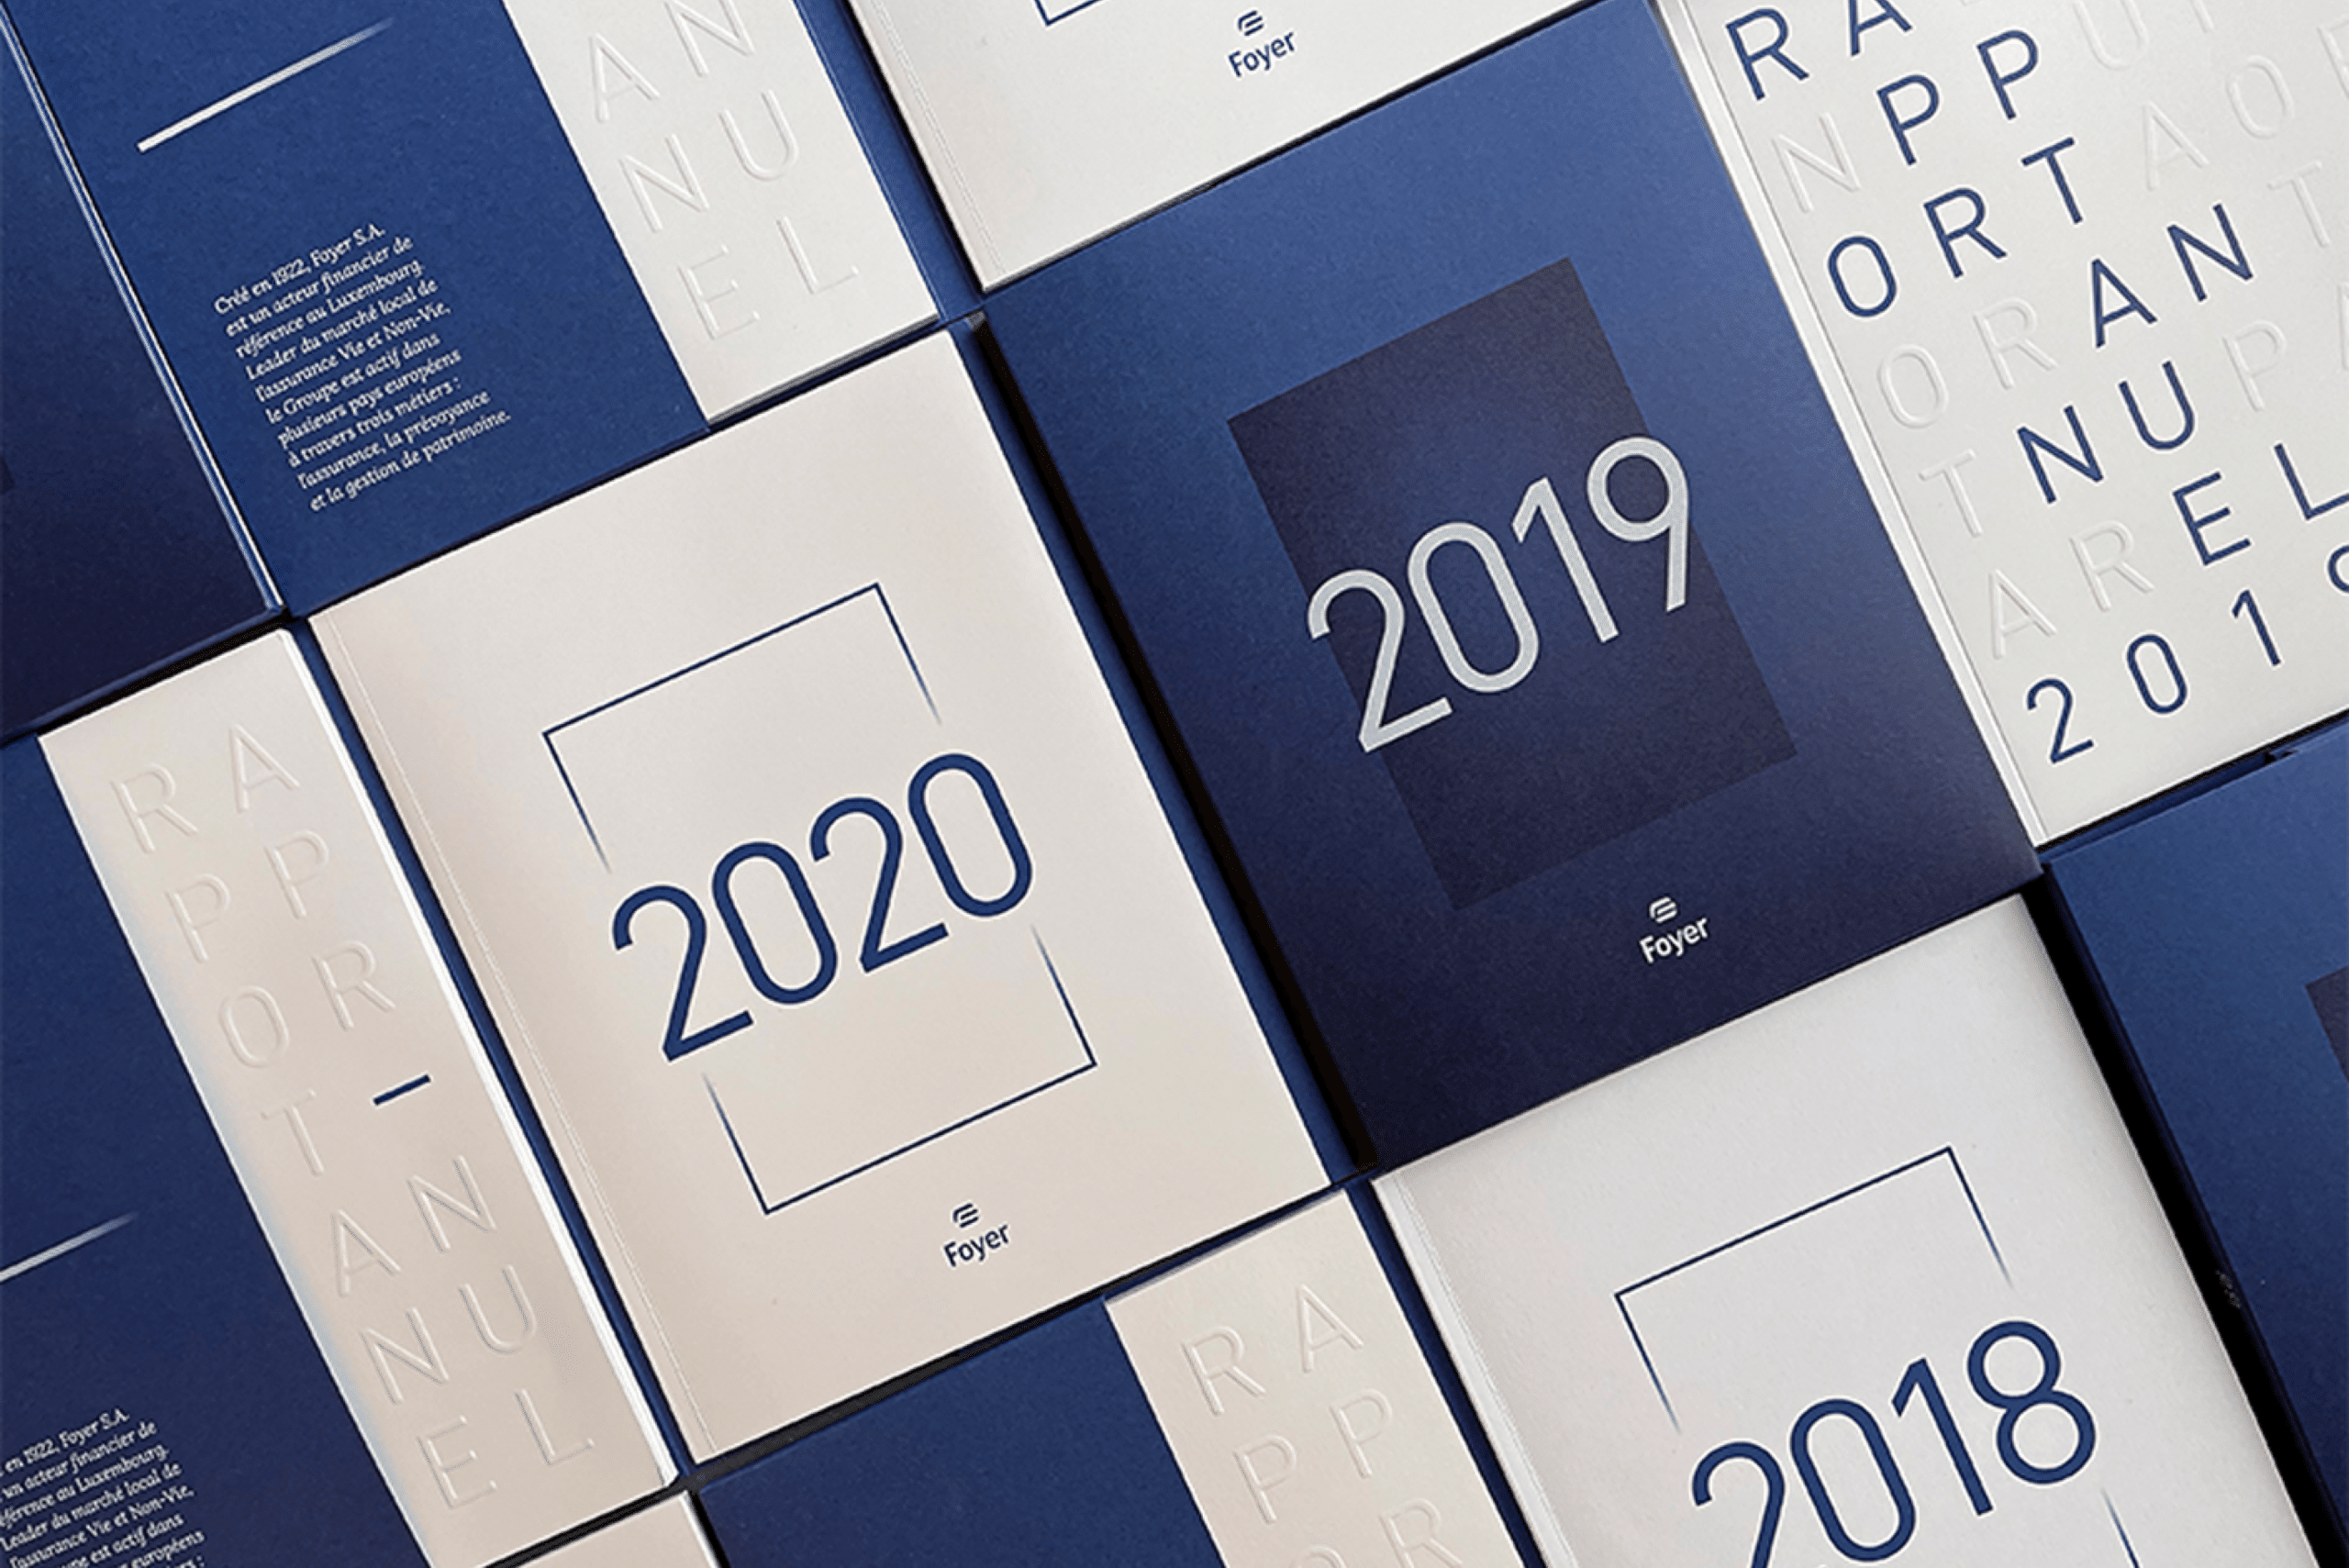 Vue en gros plan de plusieurs rapports annuels empilés et arrangés en mosaïque, montrant des couvertures variées en bleu et blanc avec les années 2018, 2019 et 2020 clairement affichées en grand format.